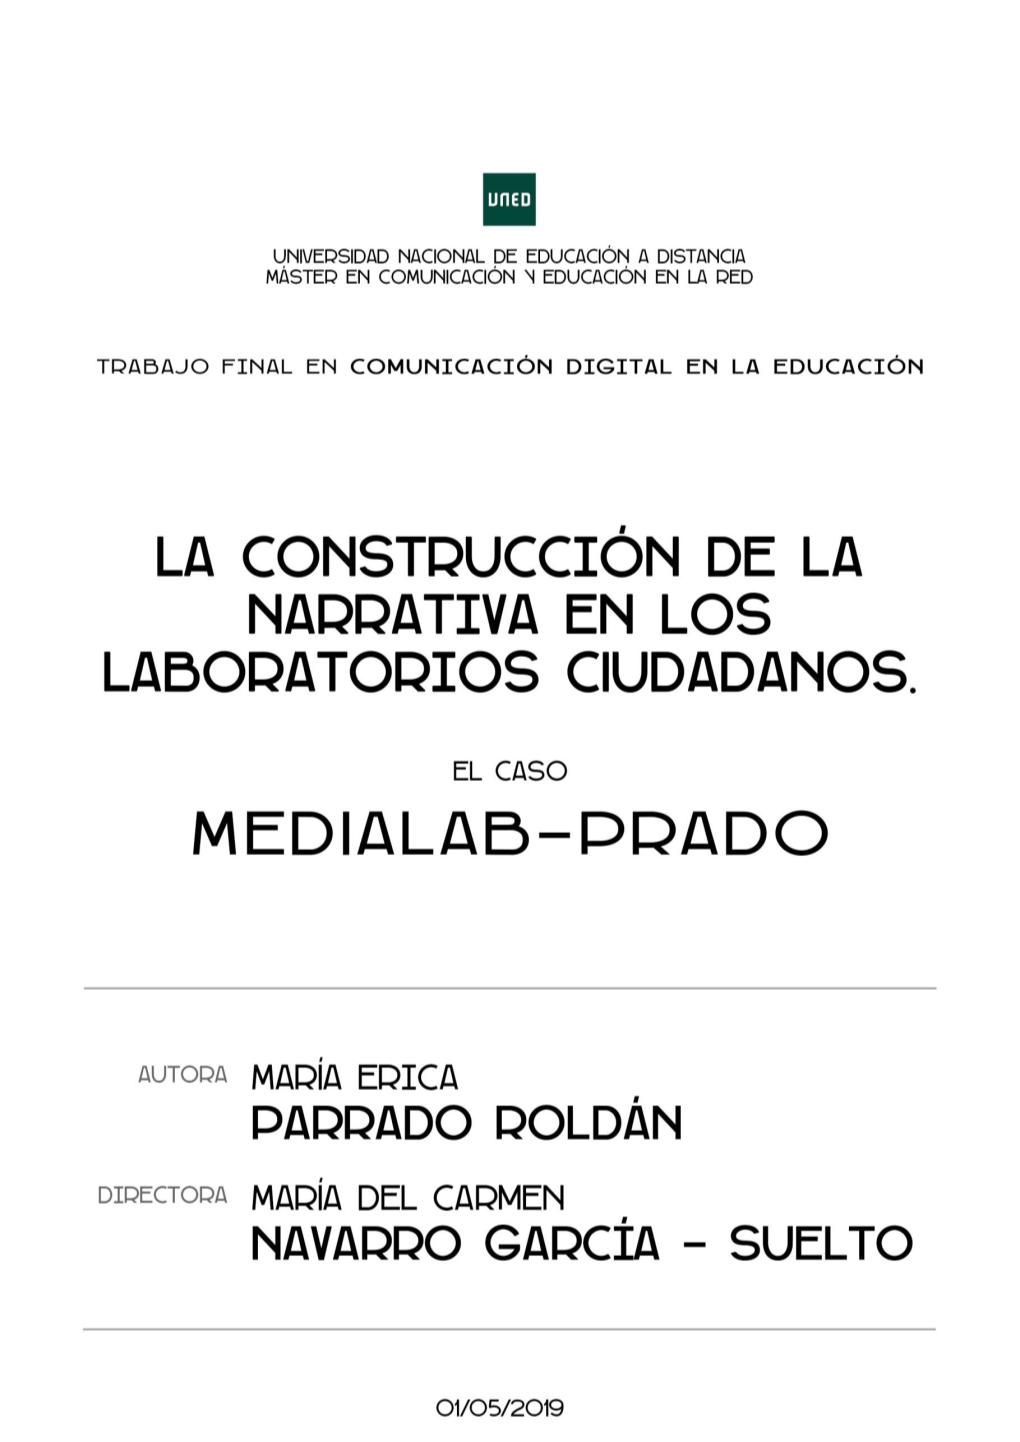 La Construcción De La Narrativa En Los Laboratorios Ciudadanos. El Caso De Medialab-Prado